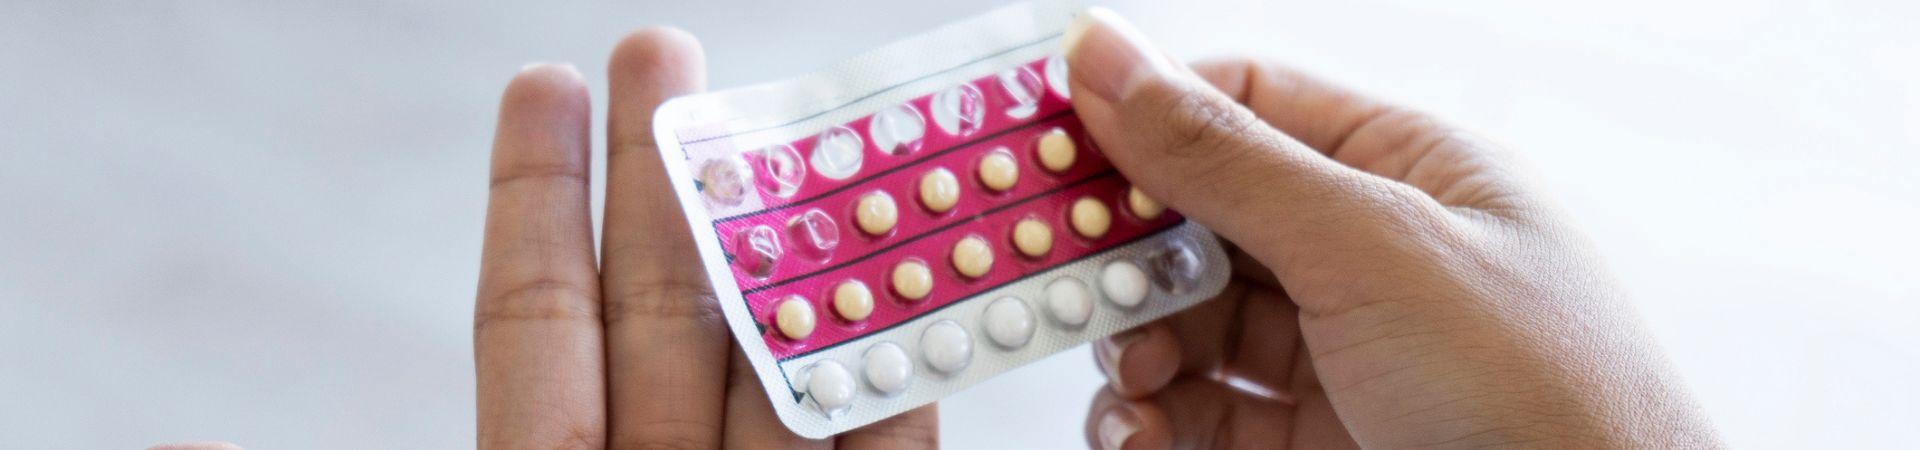 Pillola anticoncezionale: quali sono gli effetti sulla pelle?